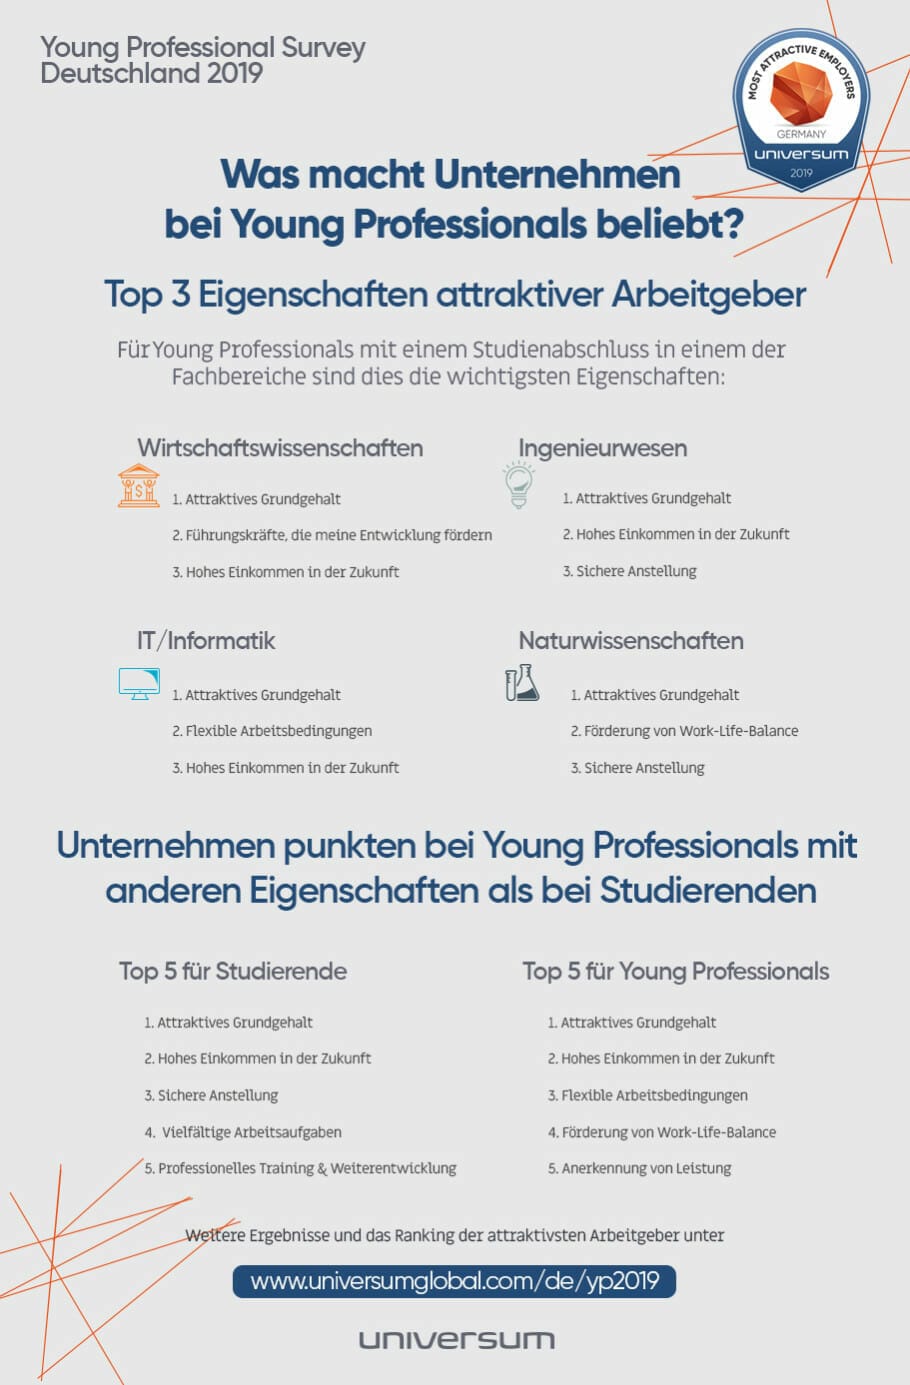 Employer Branding per Gehalts-Scheck: Was macht Arbeitgeber sonst attraktiv? {Trend!-Studie}